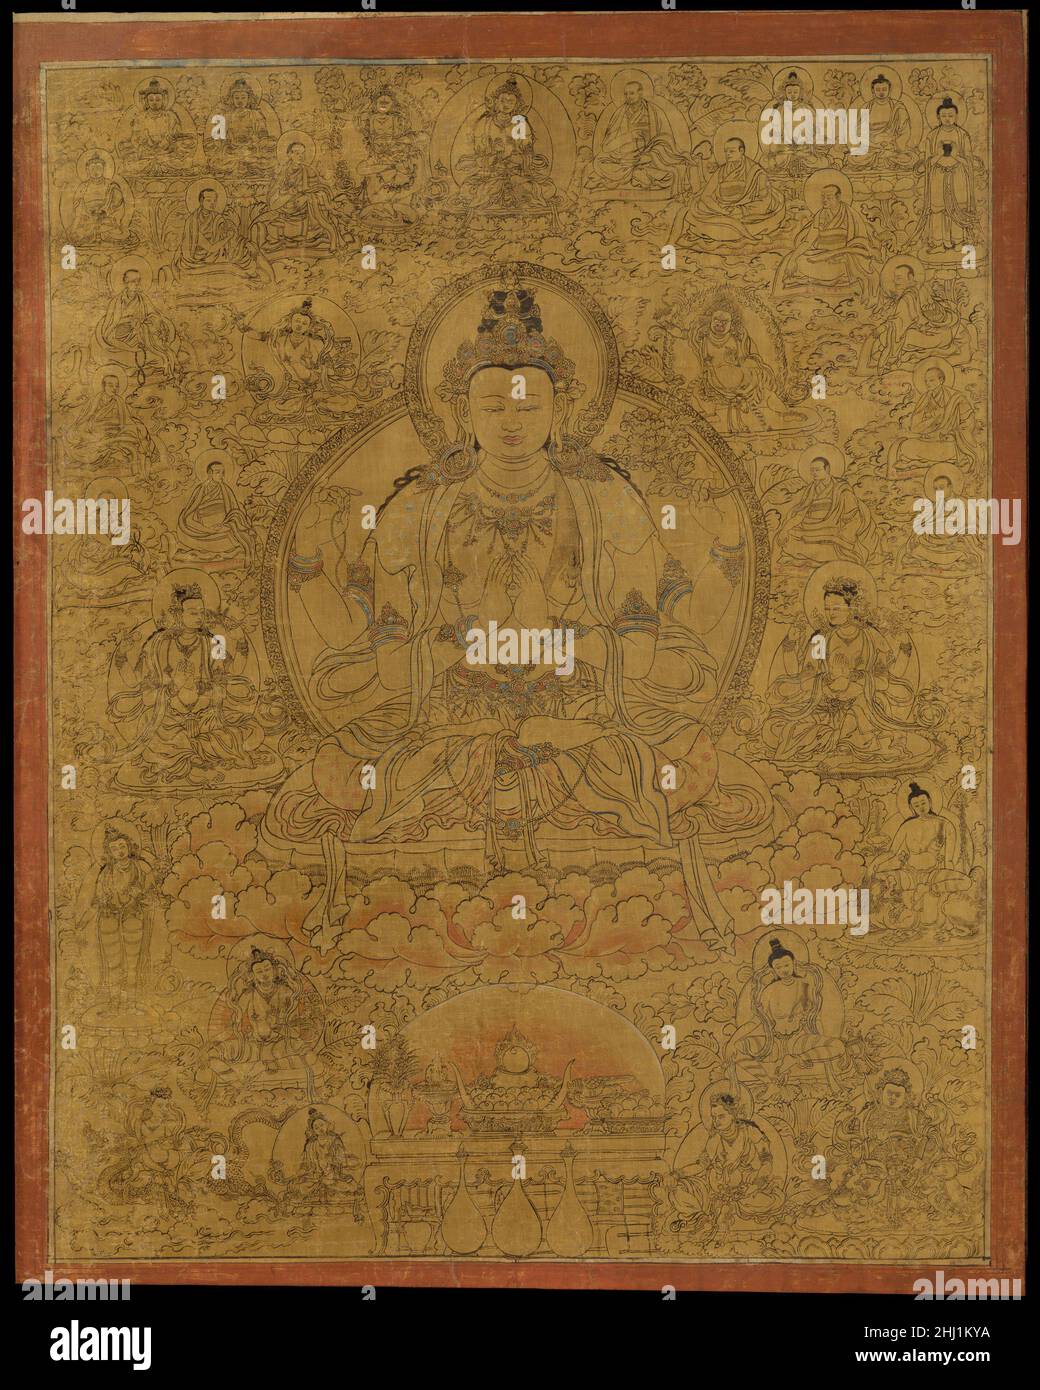 Avalokiteshvara come Shadakshari-Lokeshvara fine 15th secolo Tibet questo dipinto rappresenta la “forma a sei sillabe” di Avalokiteshvara, evocando il mantra om mani padme hum. Intorno a lui ci sono bodhisattvas, una serie di protettori, e un lignaggio di monaci. Questa manifestazione di Avalokiteshvara è particolarmente associata al Dalai lama, che è inteso come un'incarnazione di questa forma. Sadaksari-Lokeshvara è convenzionalmente bianco, anche se qui è rappresentato tutto l'oro, il più radiante dei colori.. Avalokiteshvara come Shadakshari-Lokeshvara 37800 Foto Stock